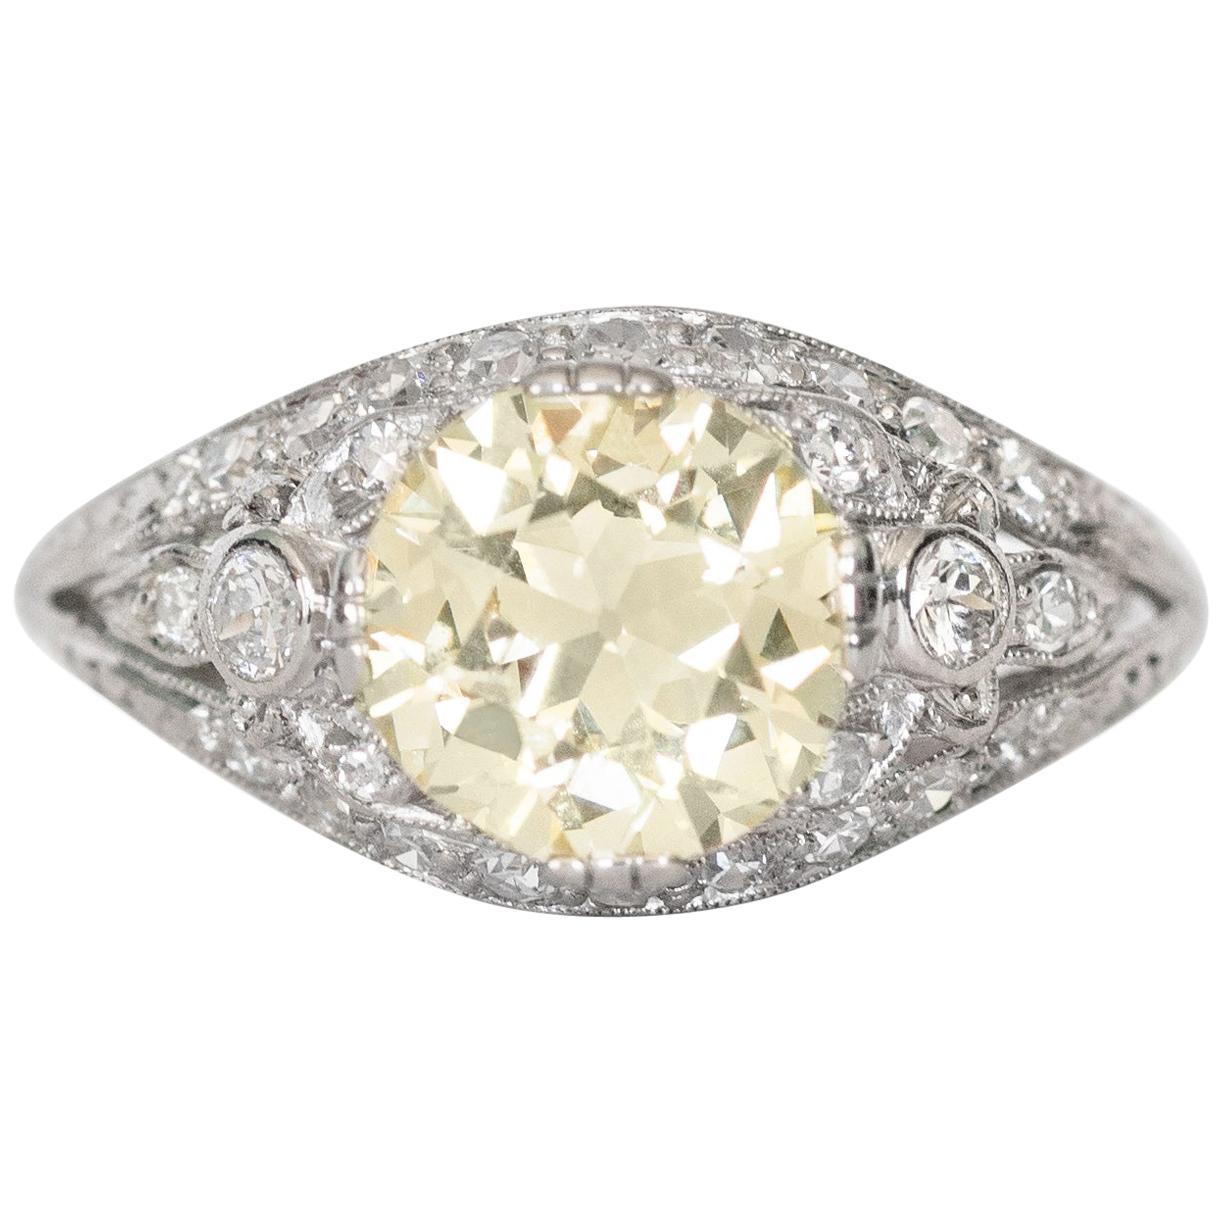 2.18 Carat Diamond Platinum Engagement Ring